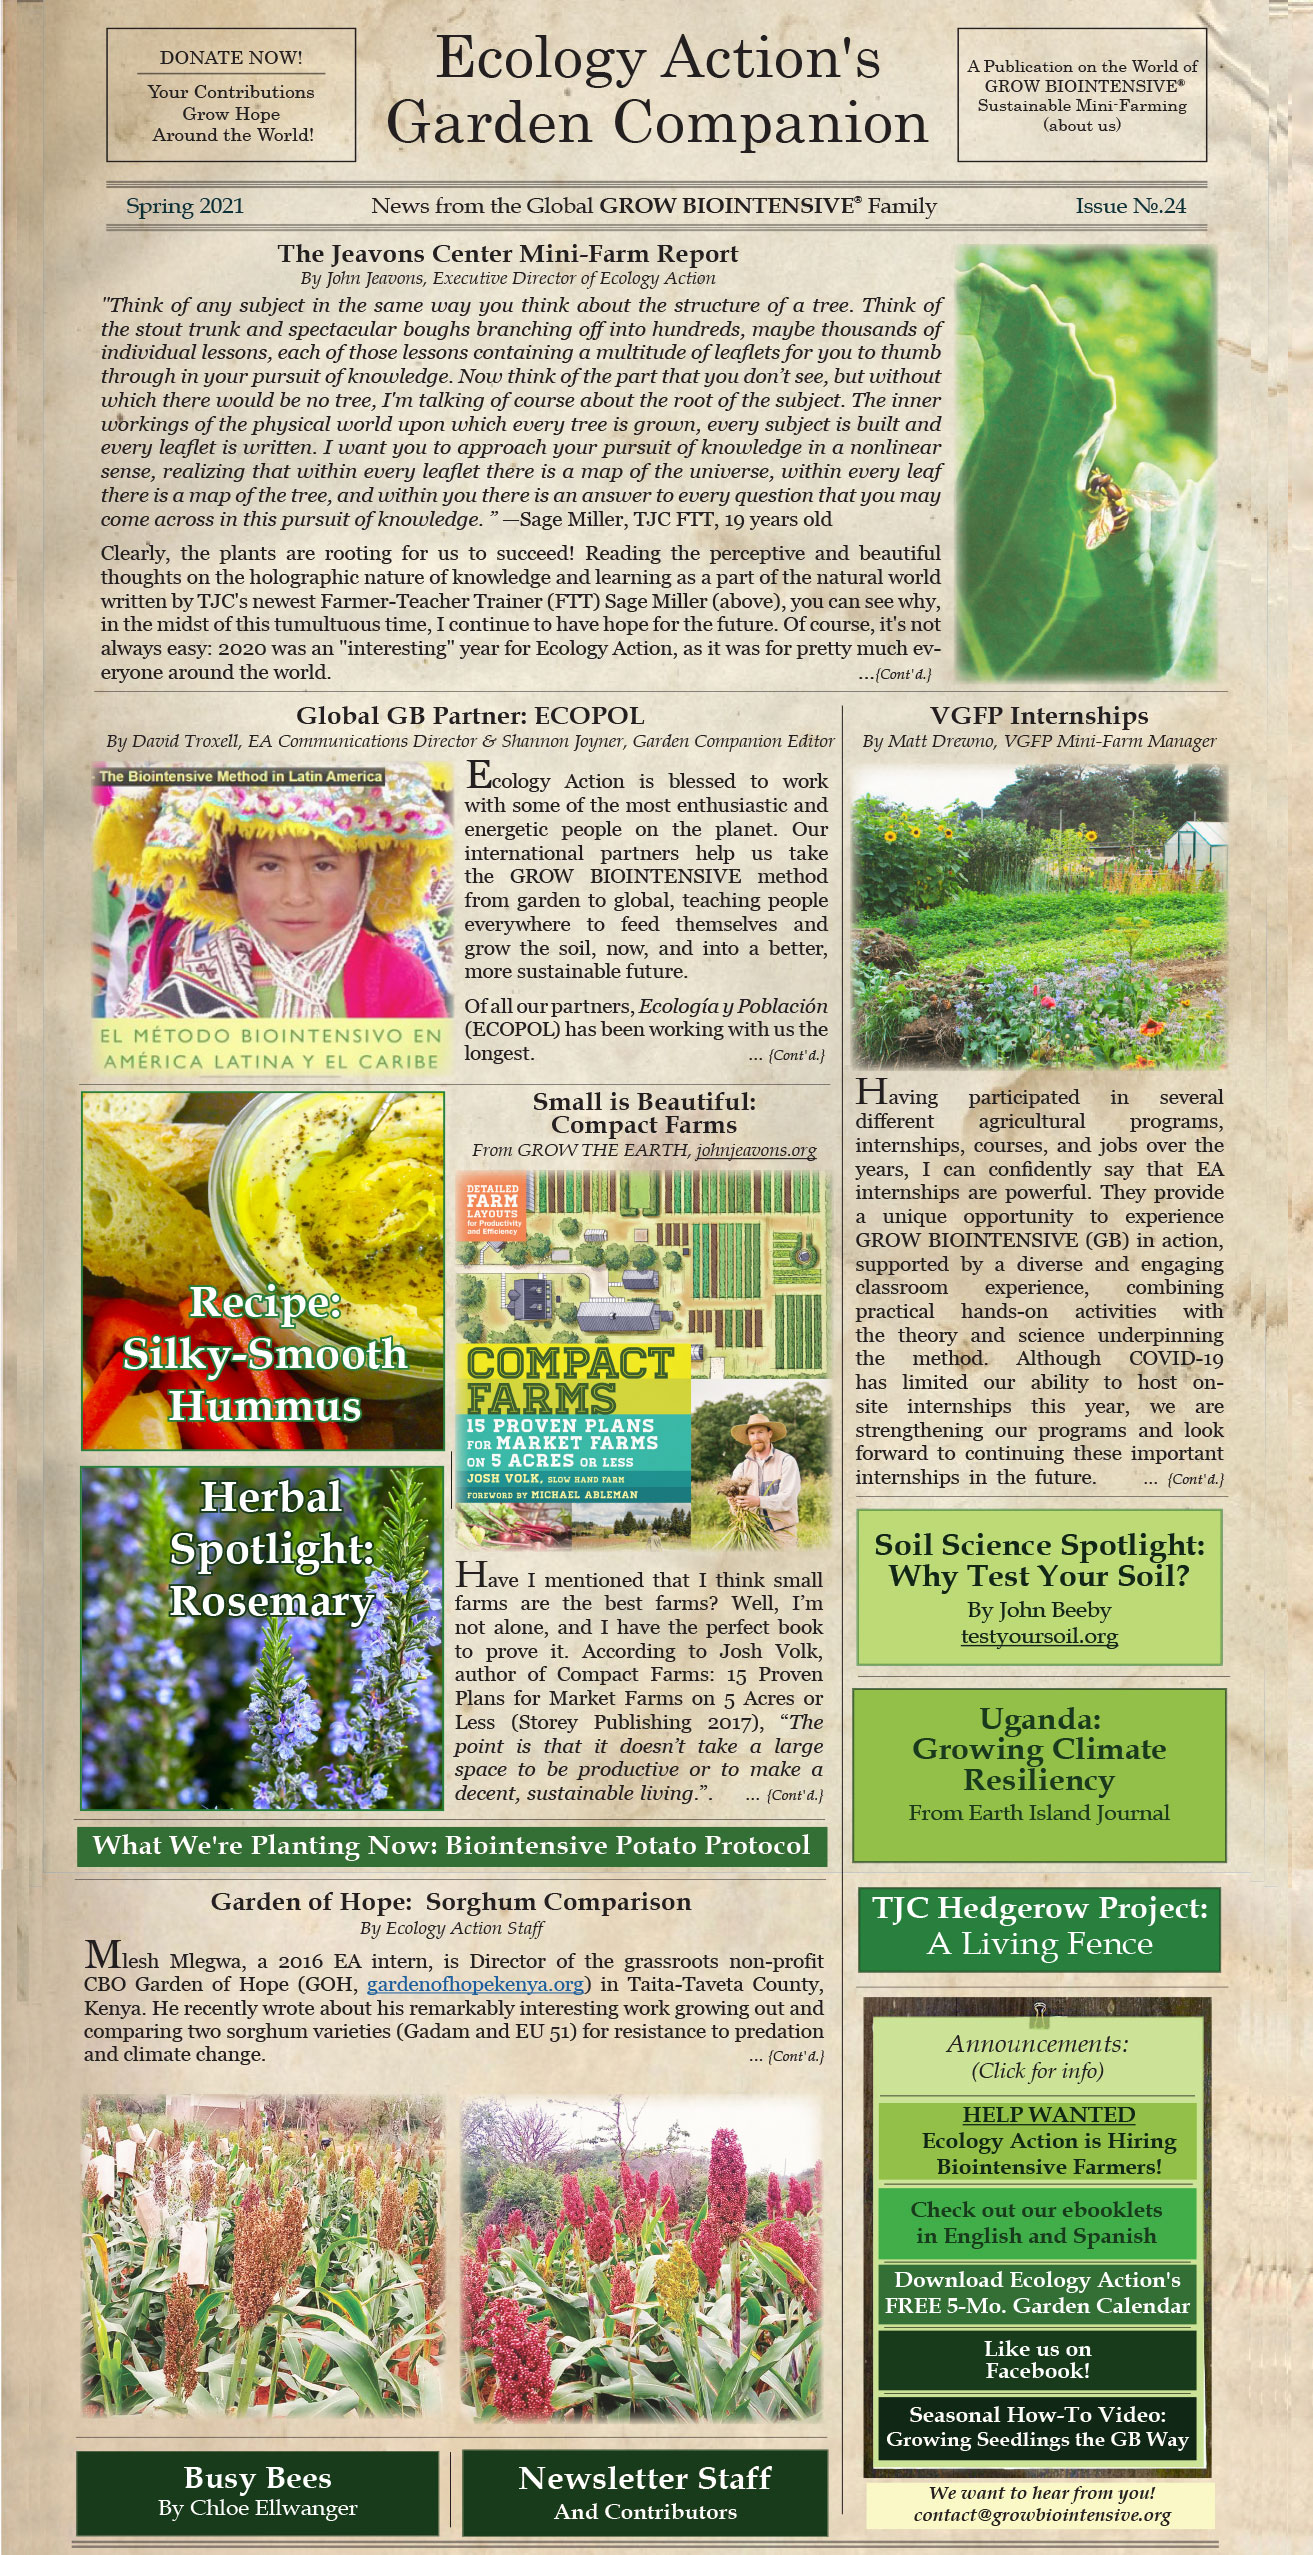 Garden Companion Newsletter Issue No. 17